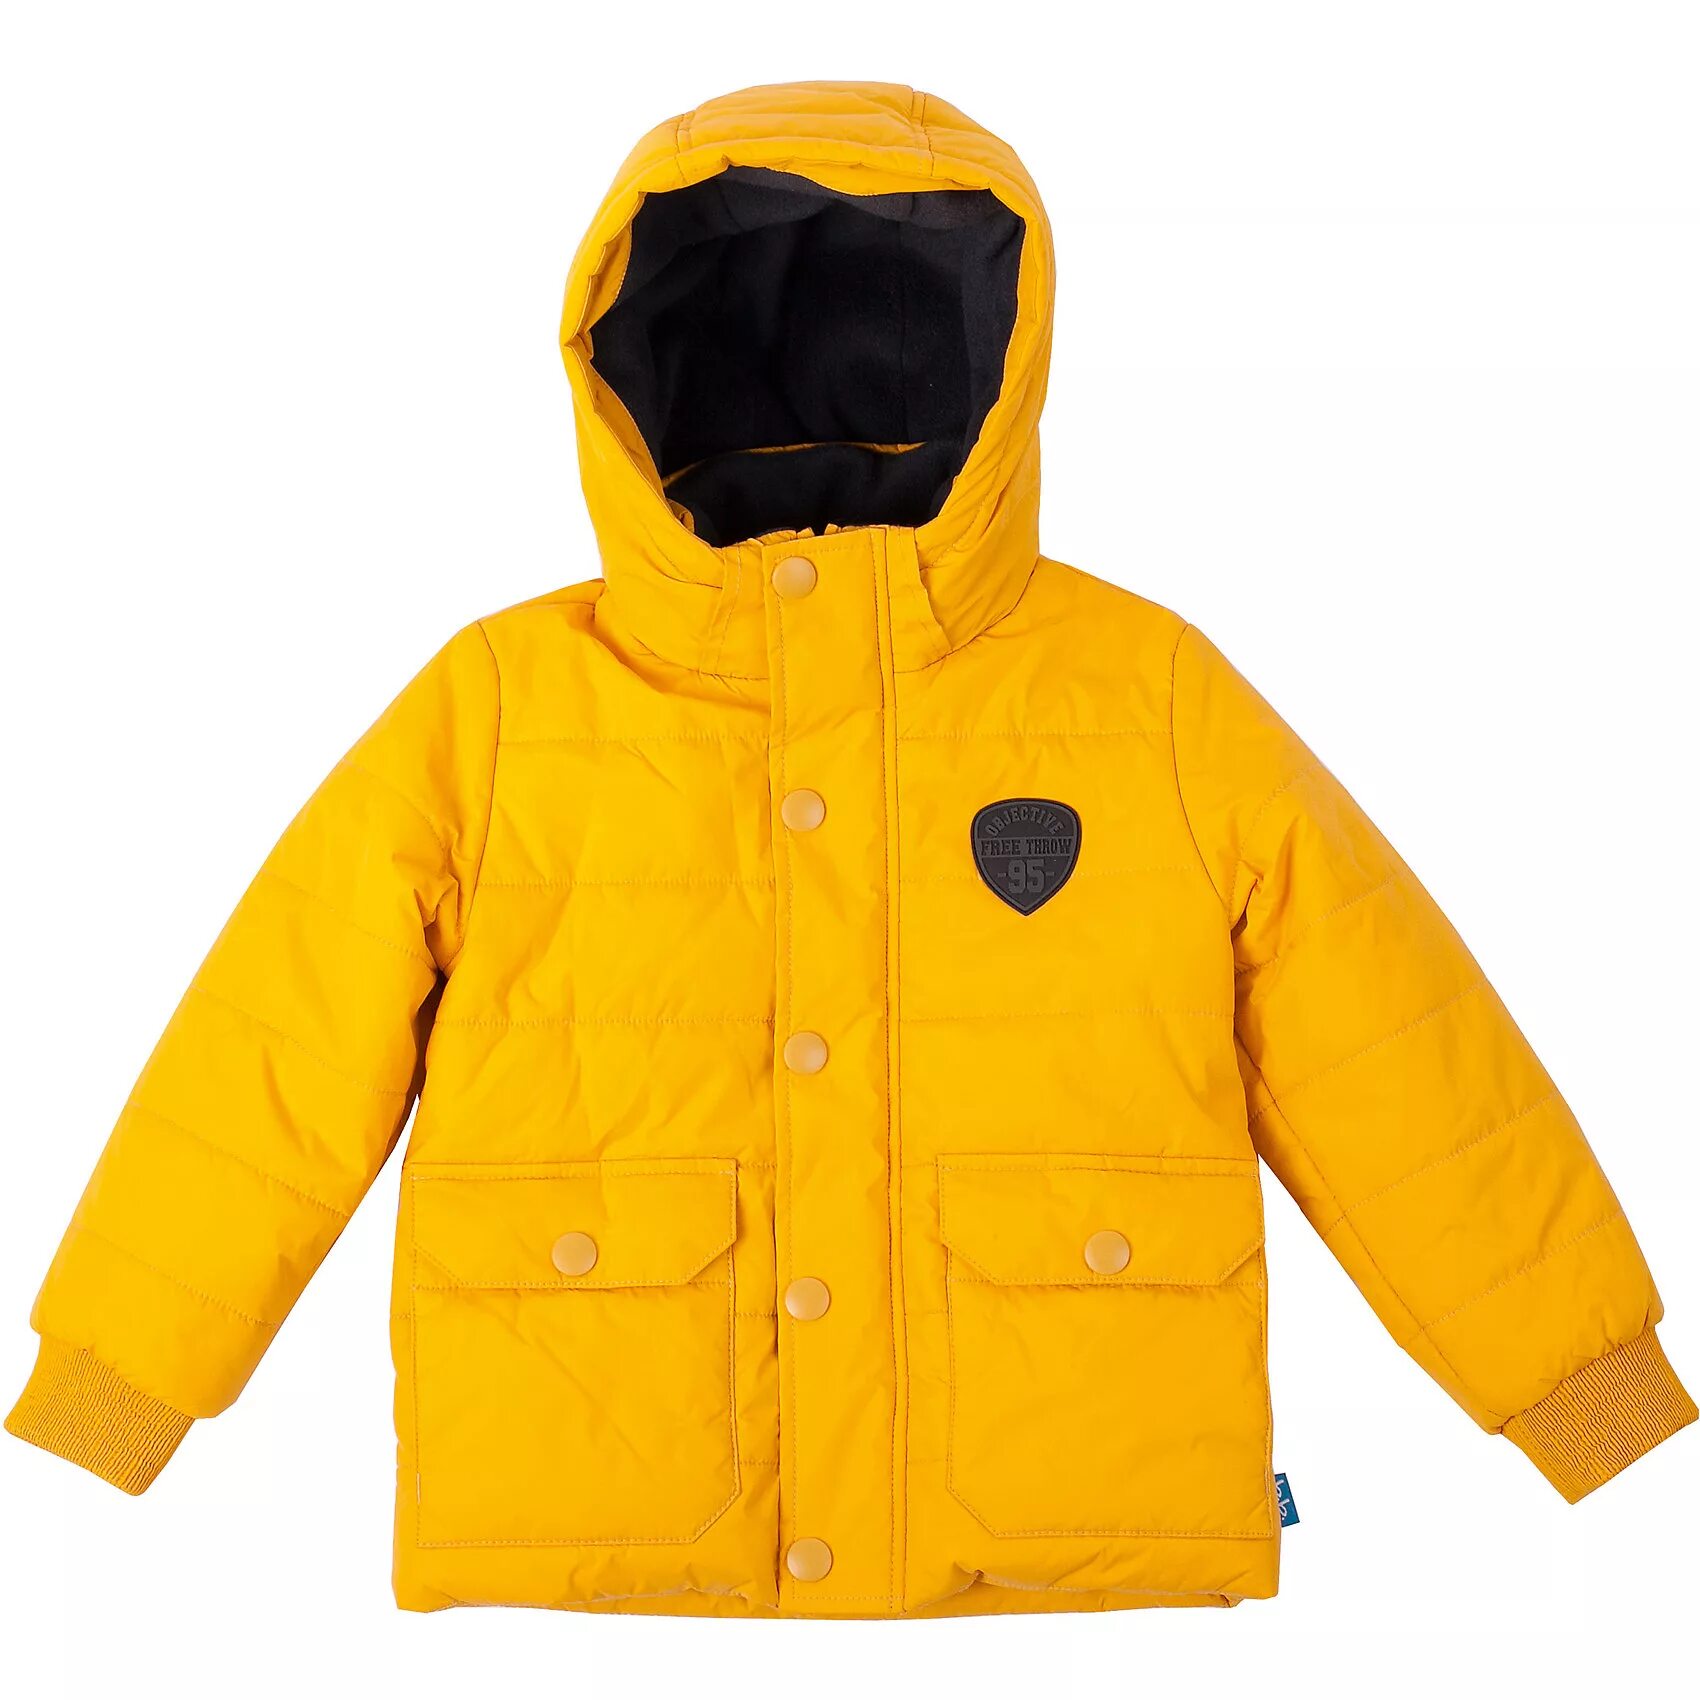 Желтая куртка для мальчика. Баттон Блю желтая куртка. Куртка Баттон Блю для мальчика. Button Blue куртка для мальчика зимняя жёлтая. Button Blue куртка для мальчика желтая.